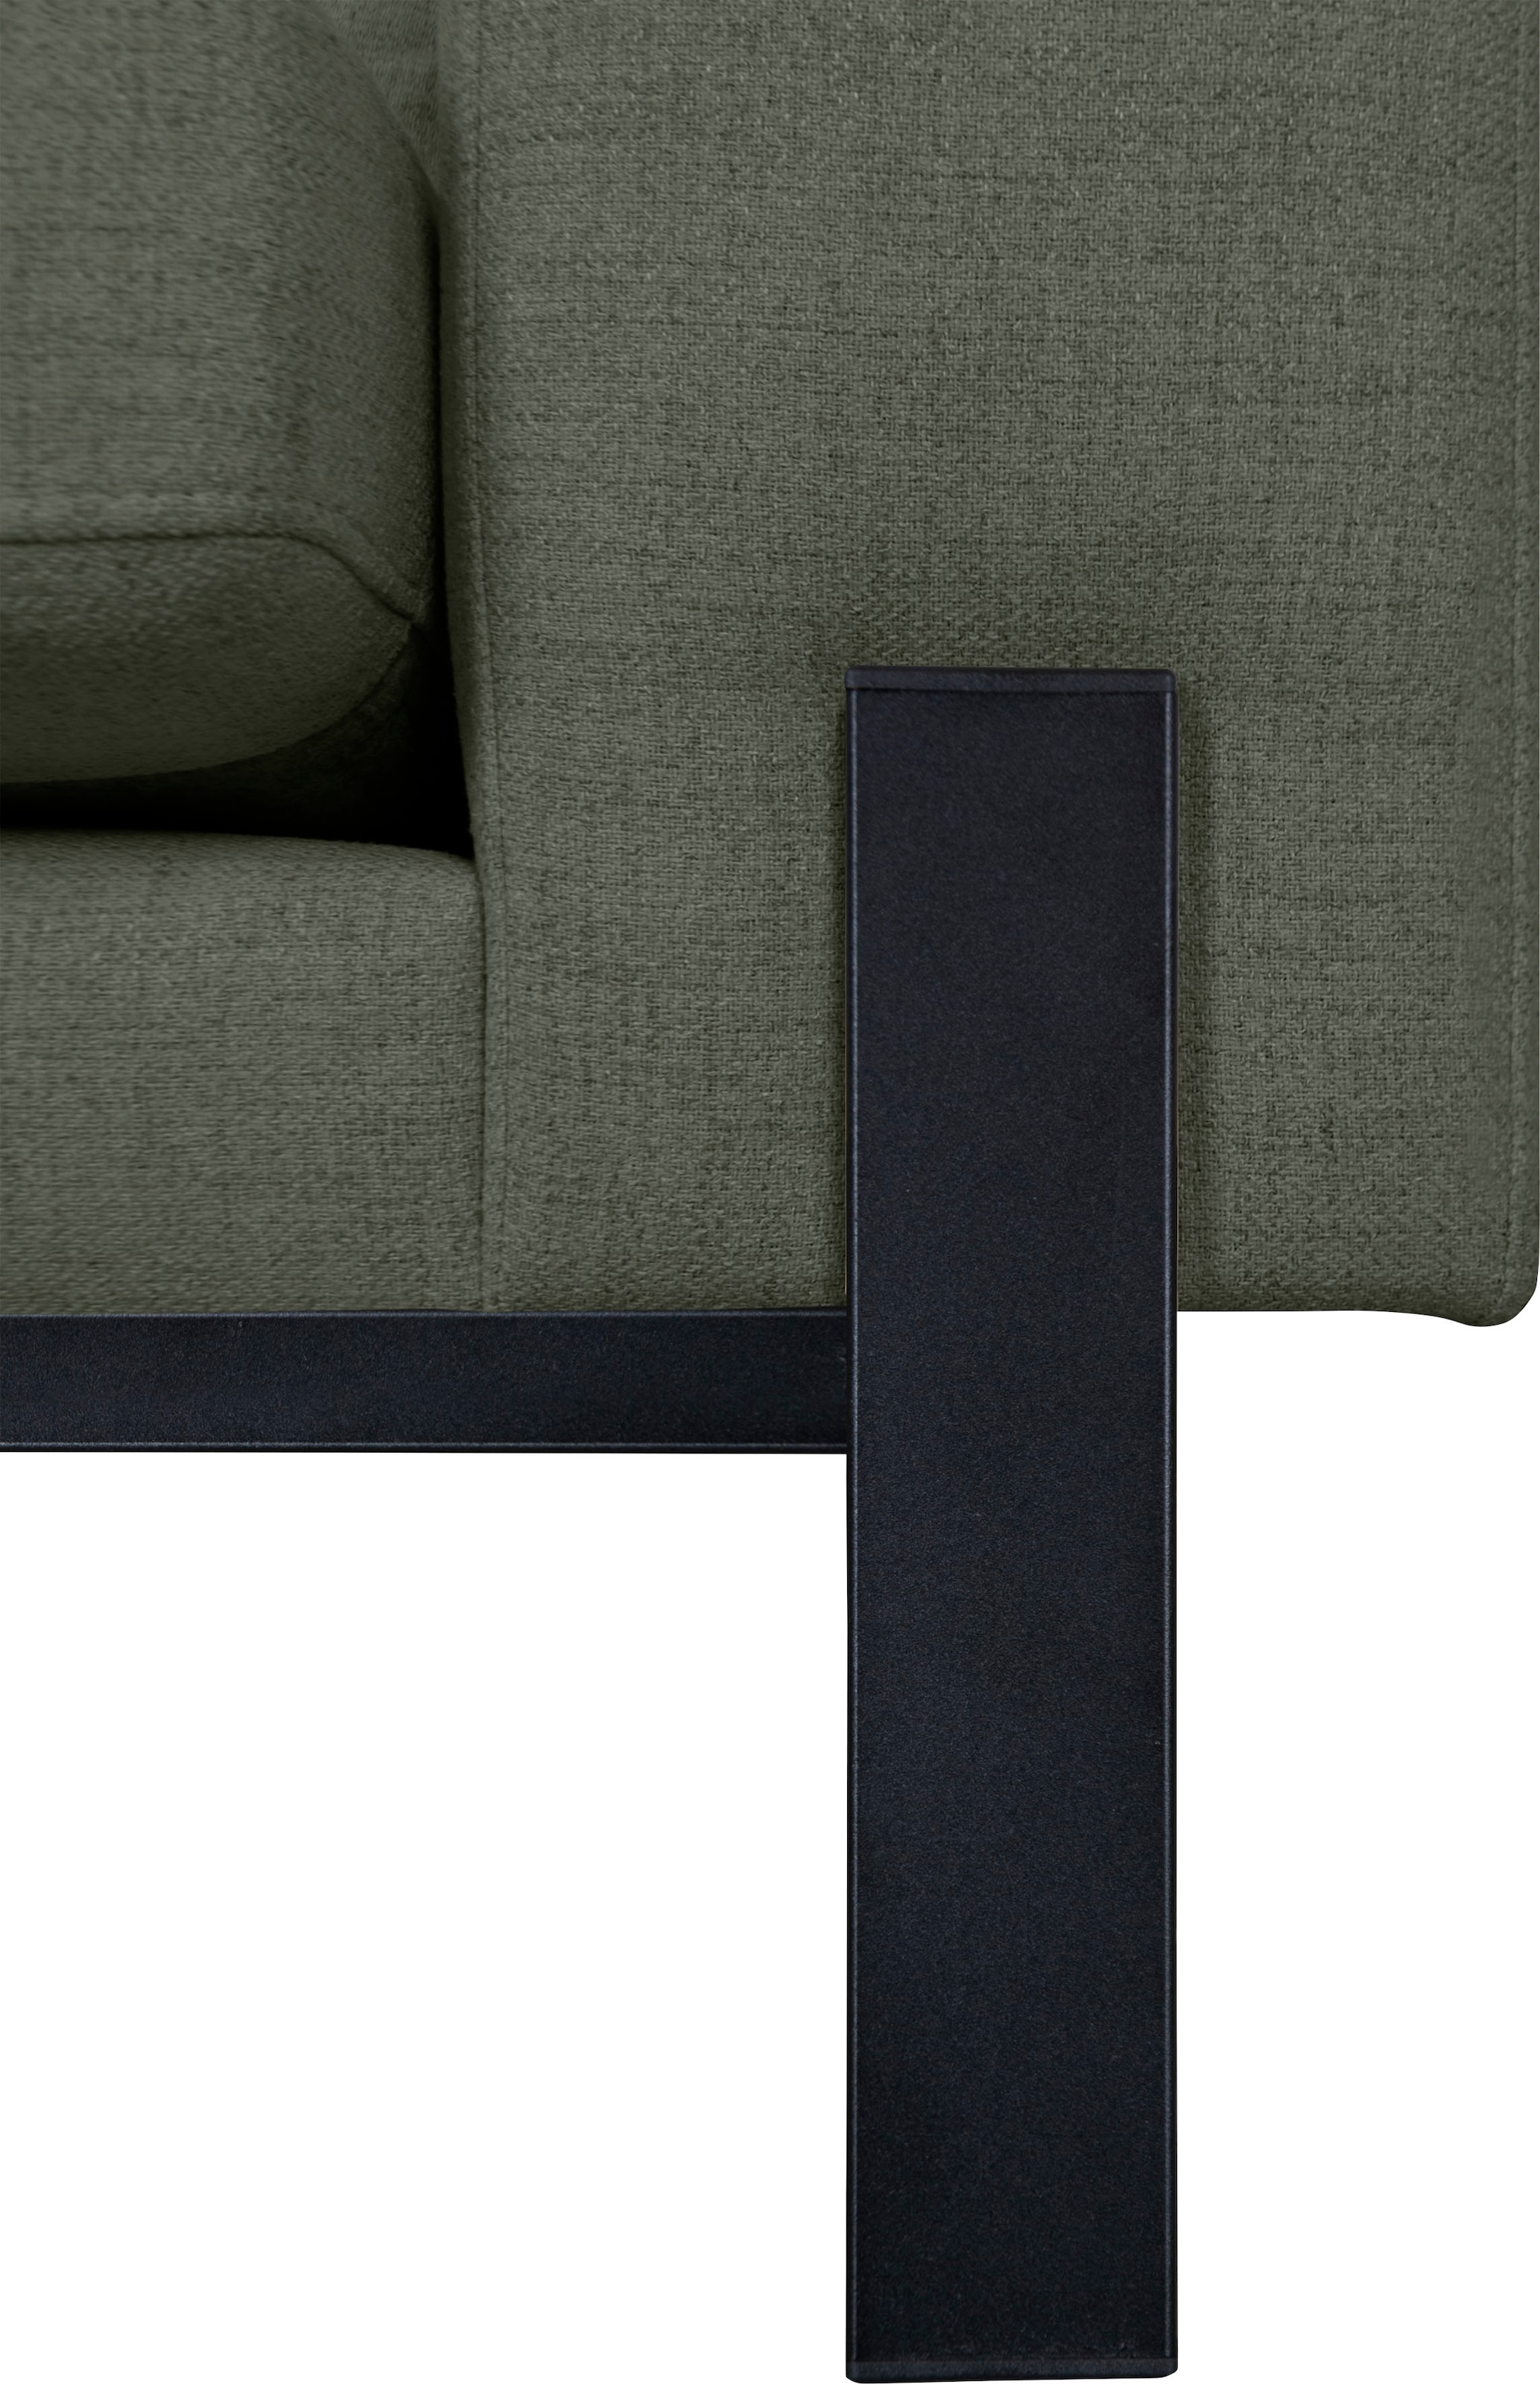 OTTO products 2-Sitzer »Ennis«, Verschiedene Bezugsqualitäten: Baumwolle, recyceltes Polyester